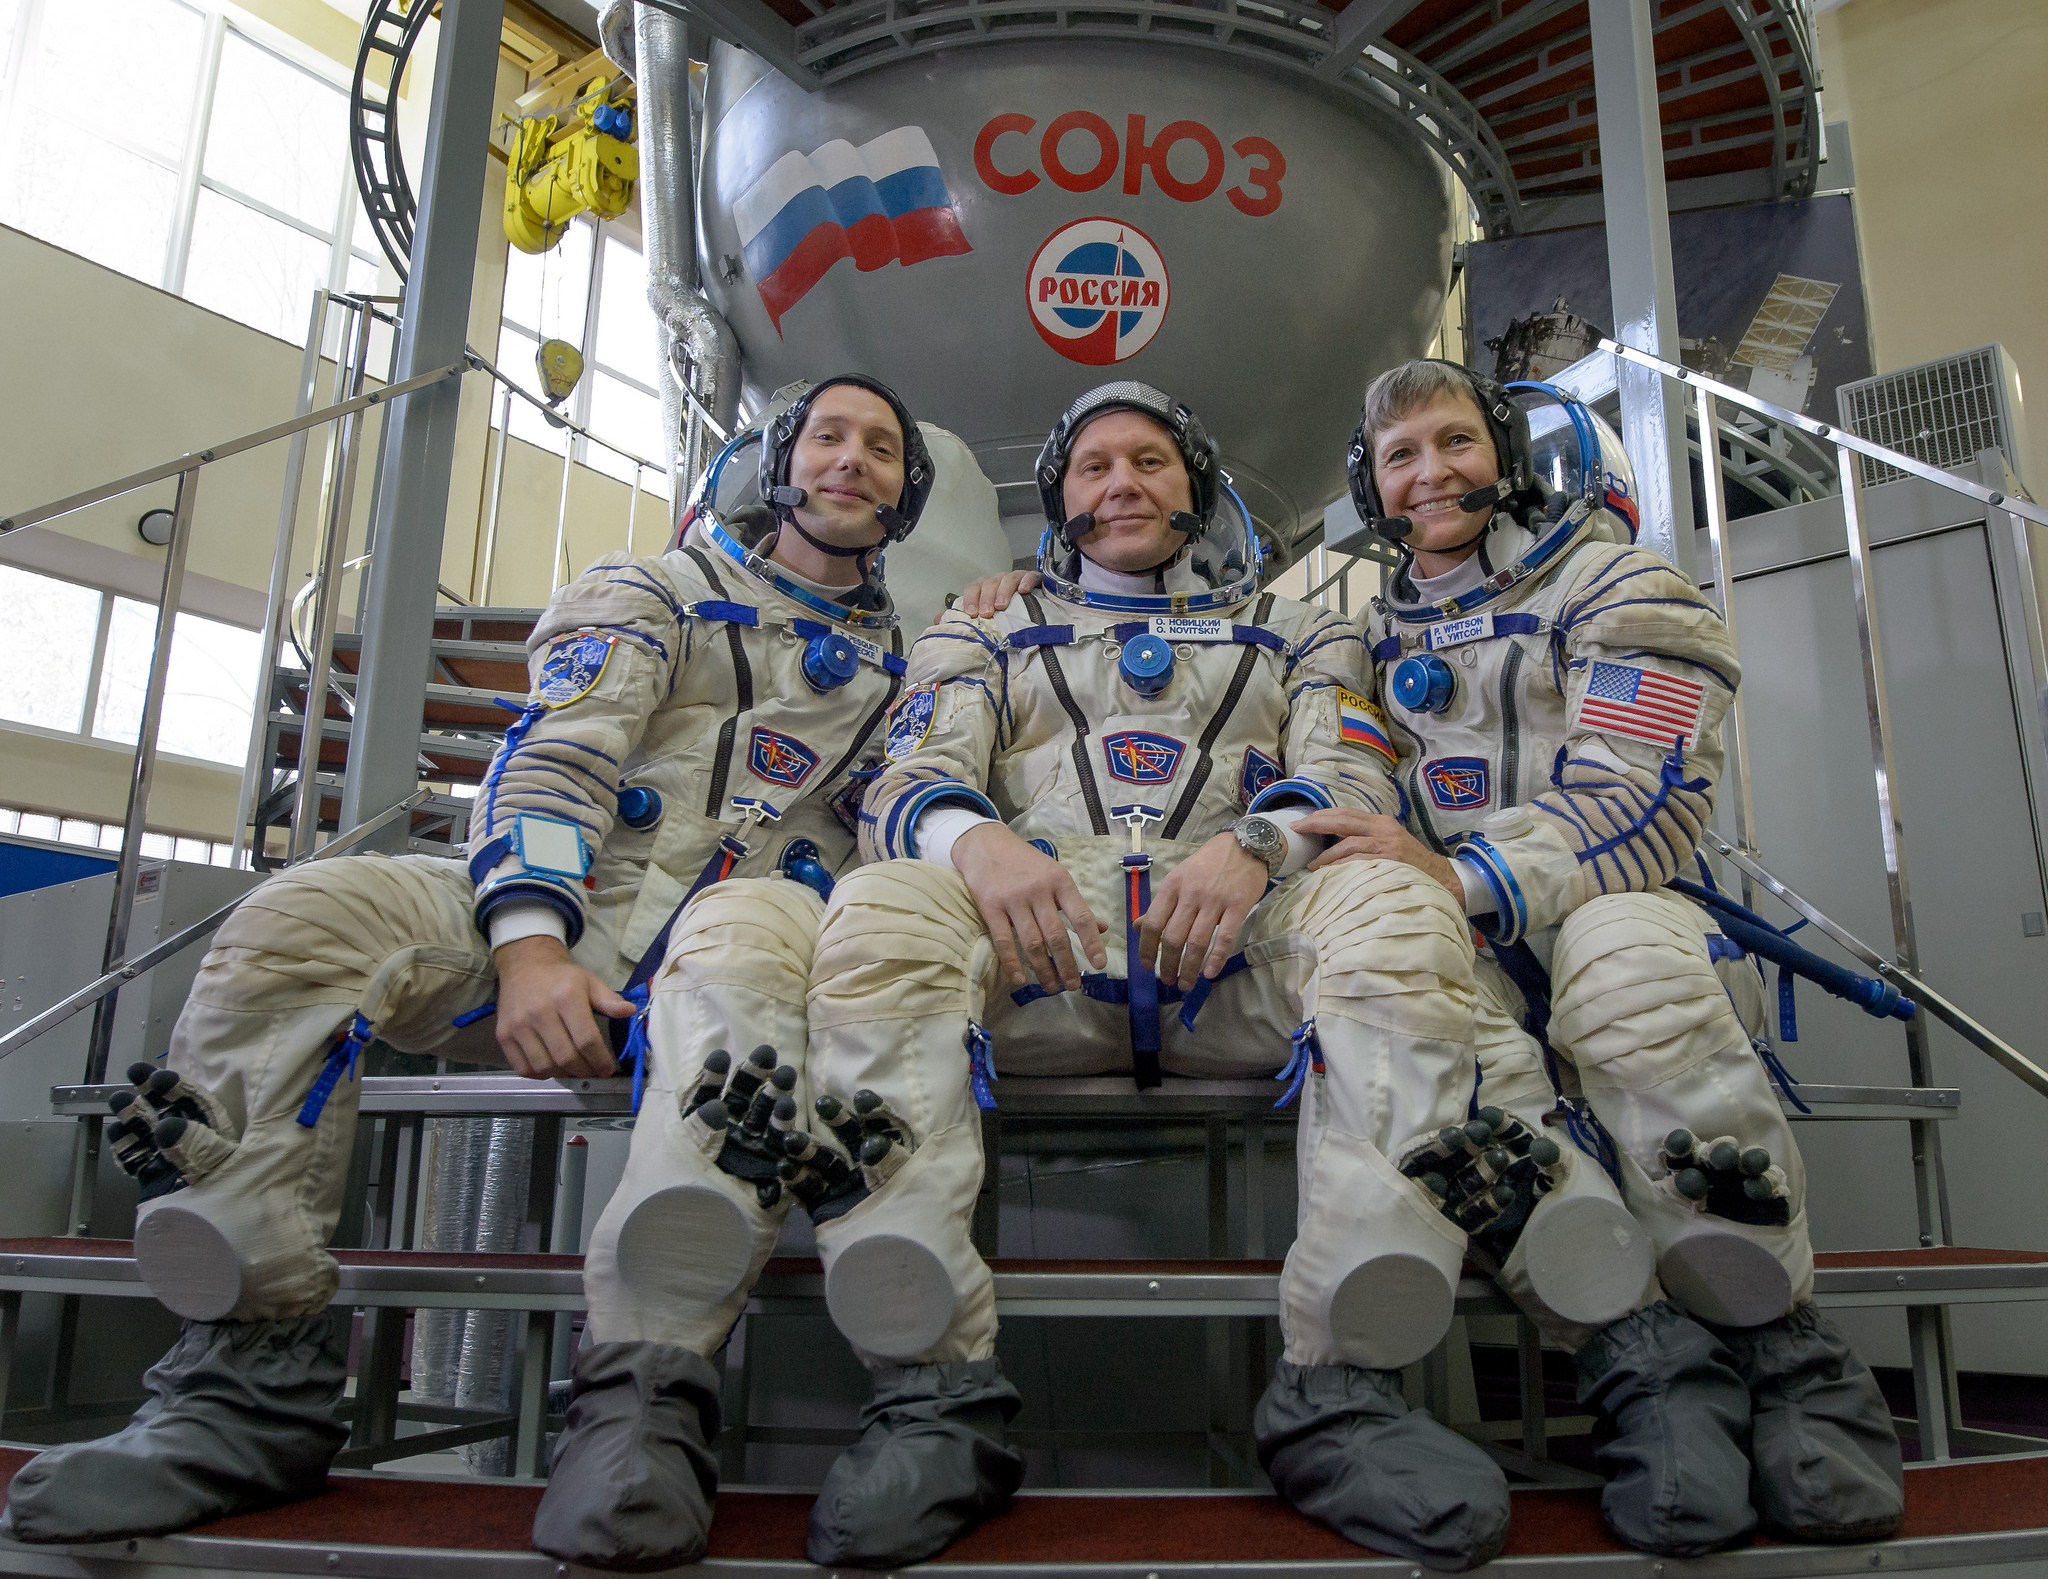 Astronauts Thomas Pesquet of ESA (European Space Agency), Oleg Novitskiy of Roscosmos, and Peggy Whitson of NASA